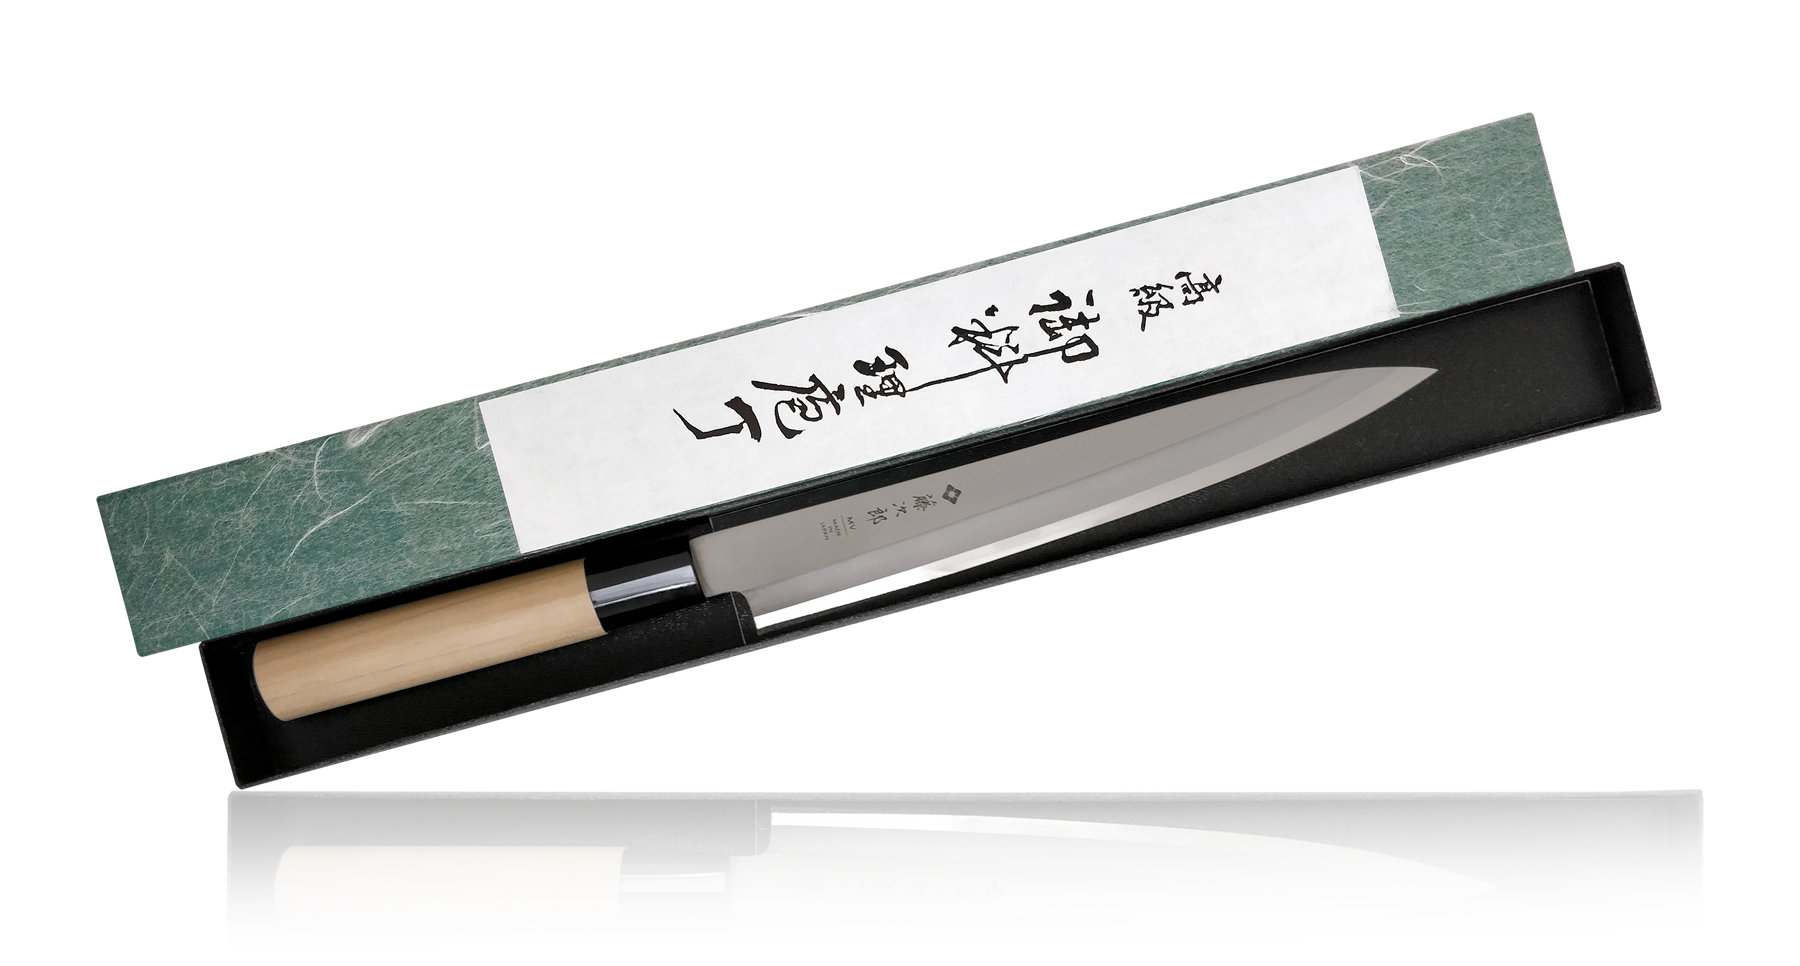 Tojiro - Coltello tradizionale giapponese, per sushi / sashimi, professionale, in acciaio molibdeno vanadio, lama ultra affilata, manico in legno Yanagiba 21 cm (F-1056)